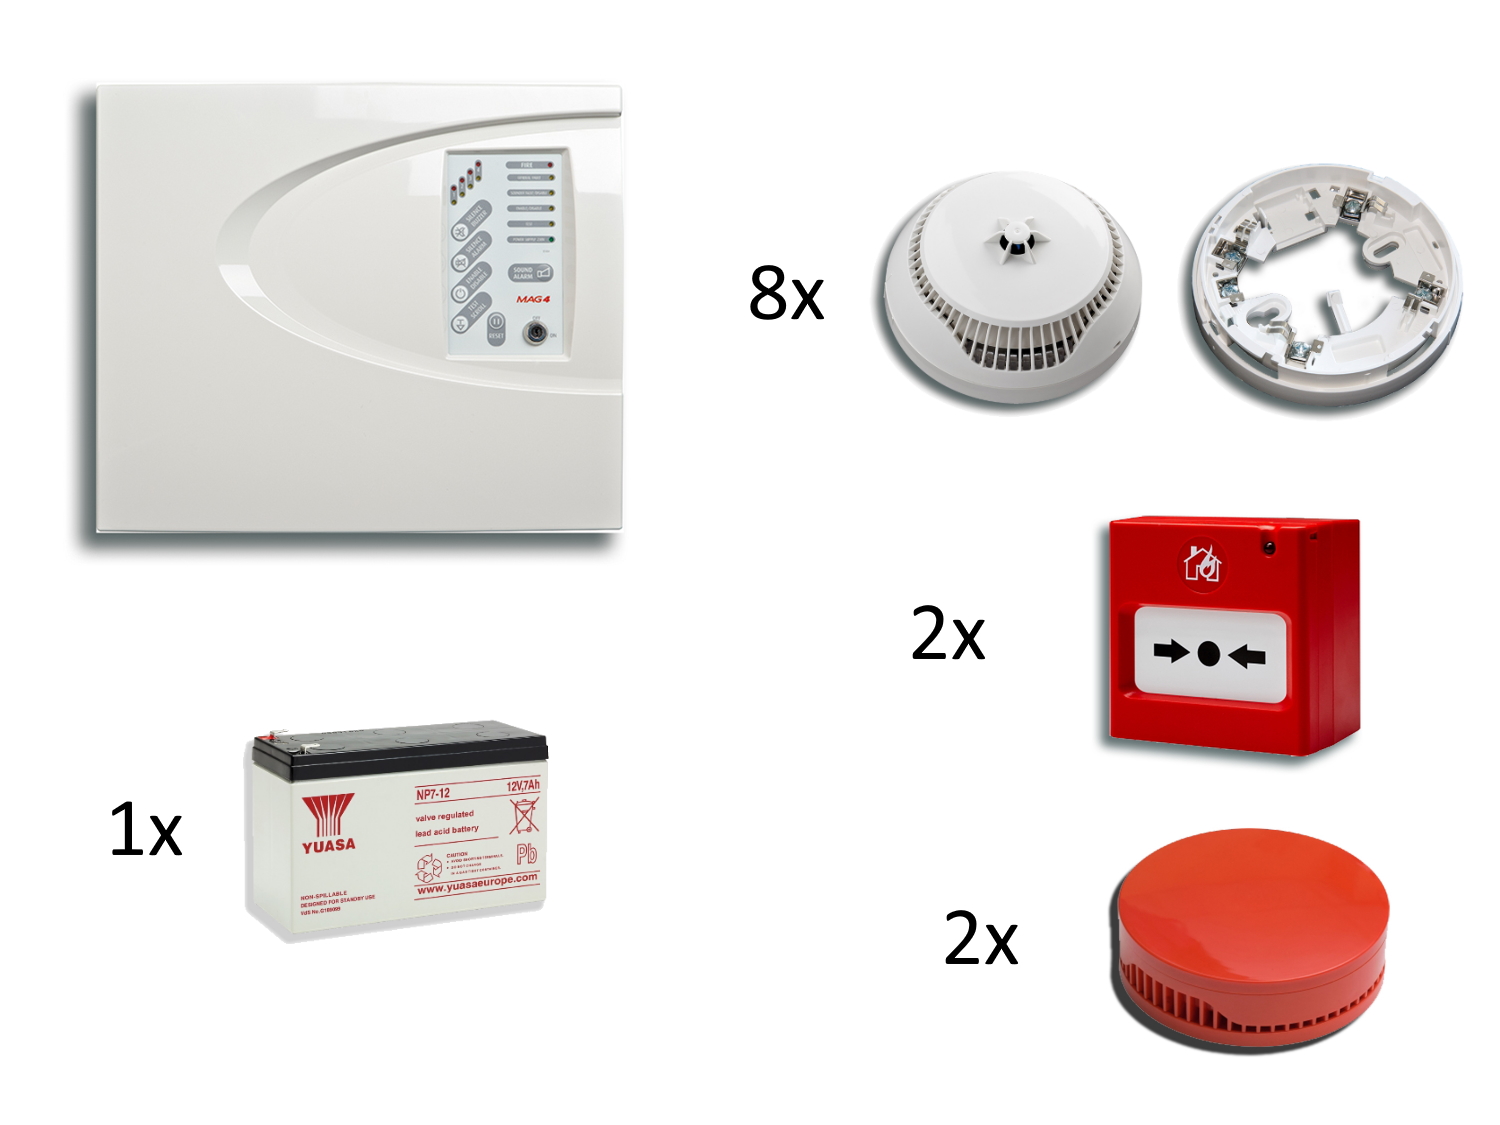 30050033 Kit Teletek avec 1 panneau incendie conventionnel, batterie, 8x détecteur multicritères + socle, 2x bouton poussoir et 2x sirène intérieure rouge.